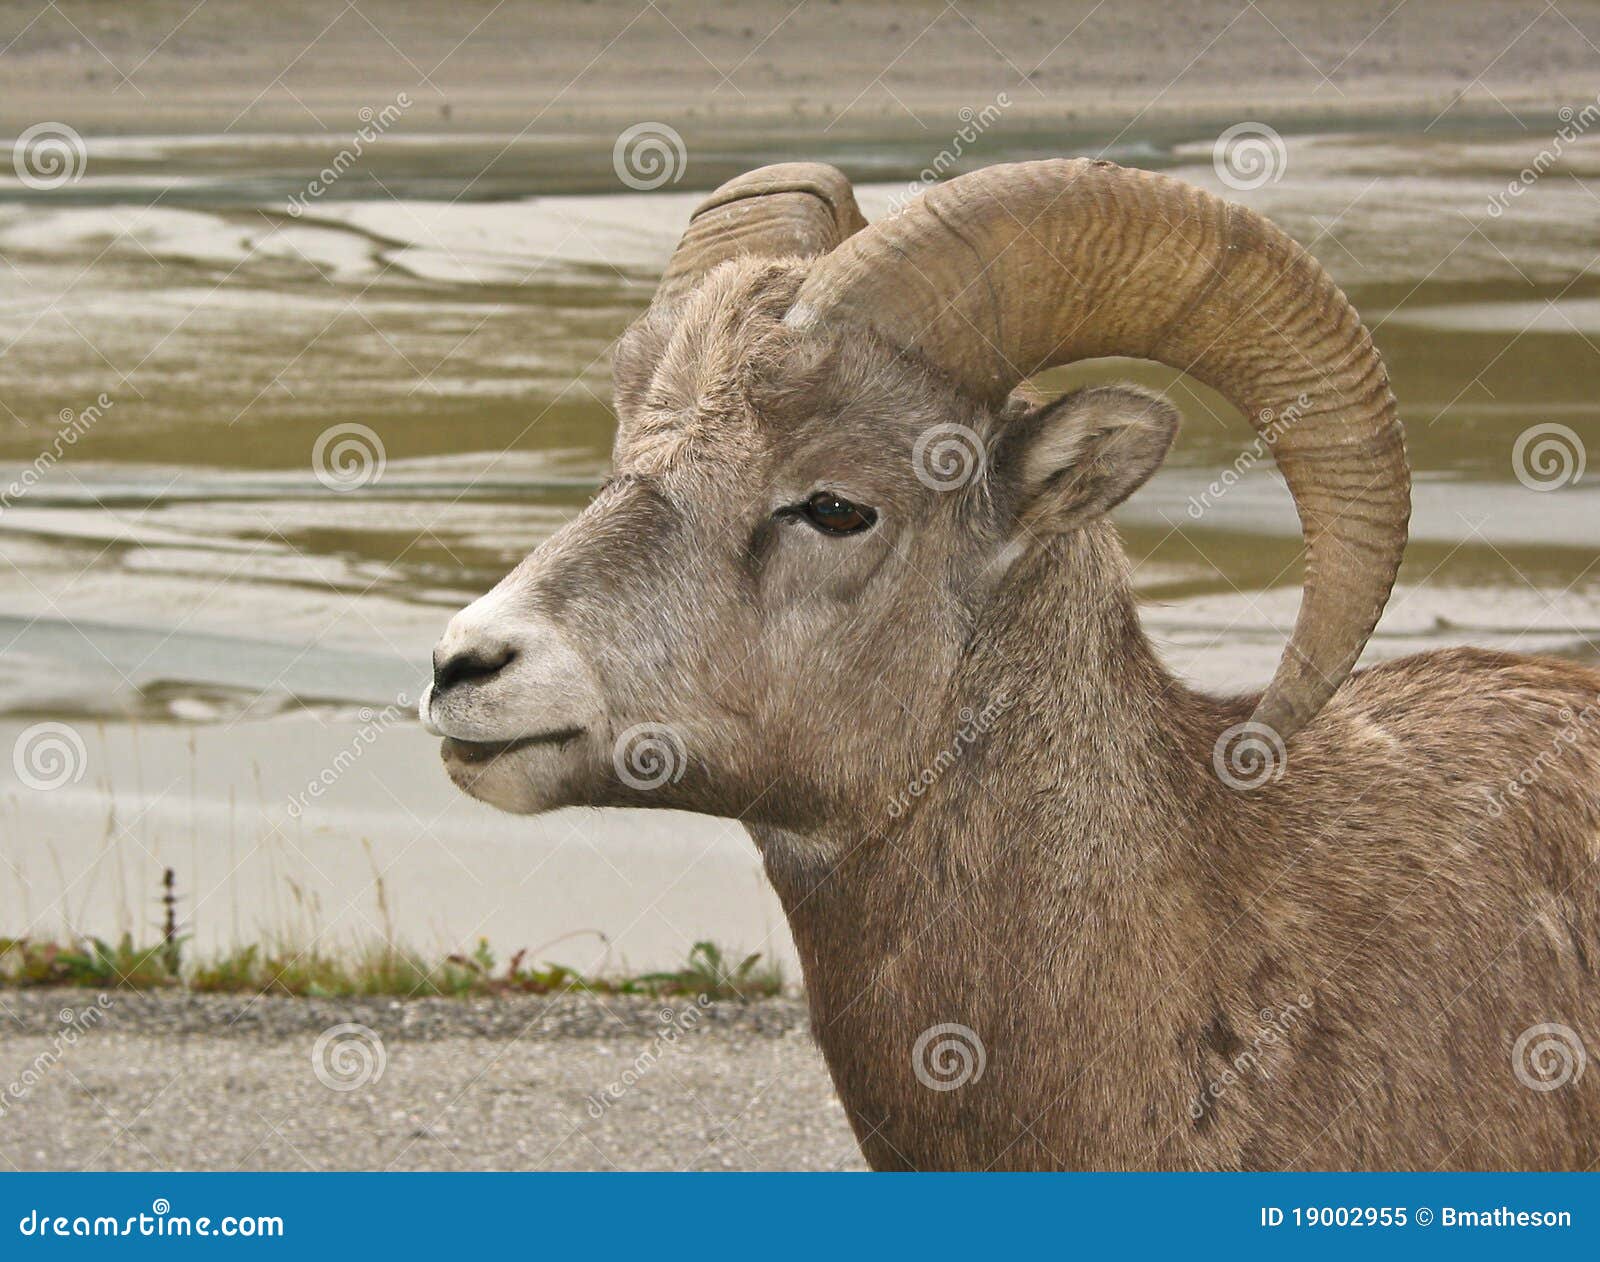 bighorn sheep #3